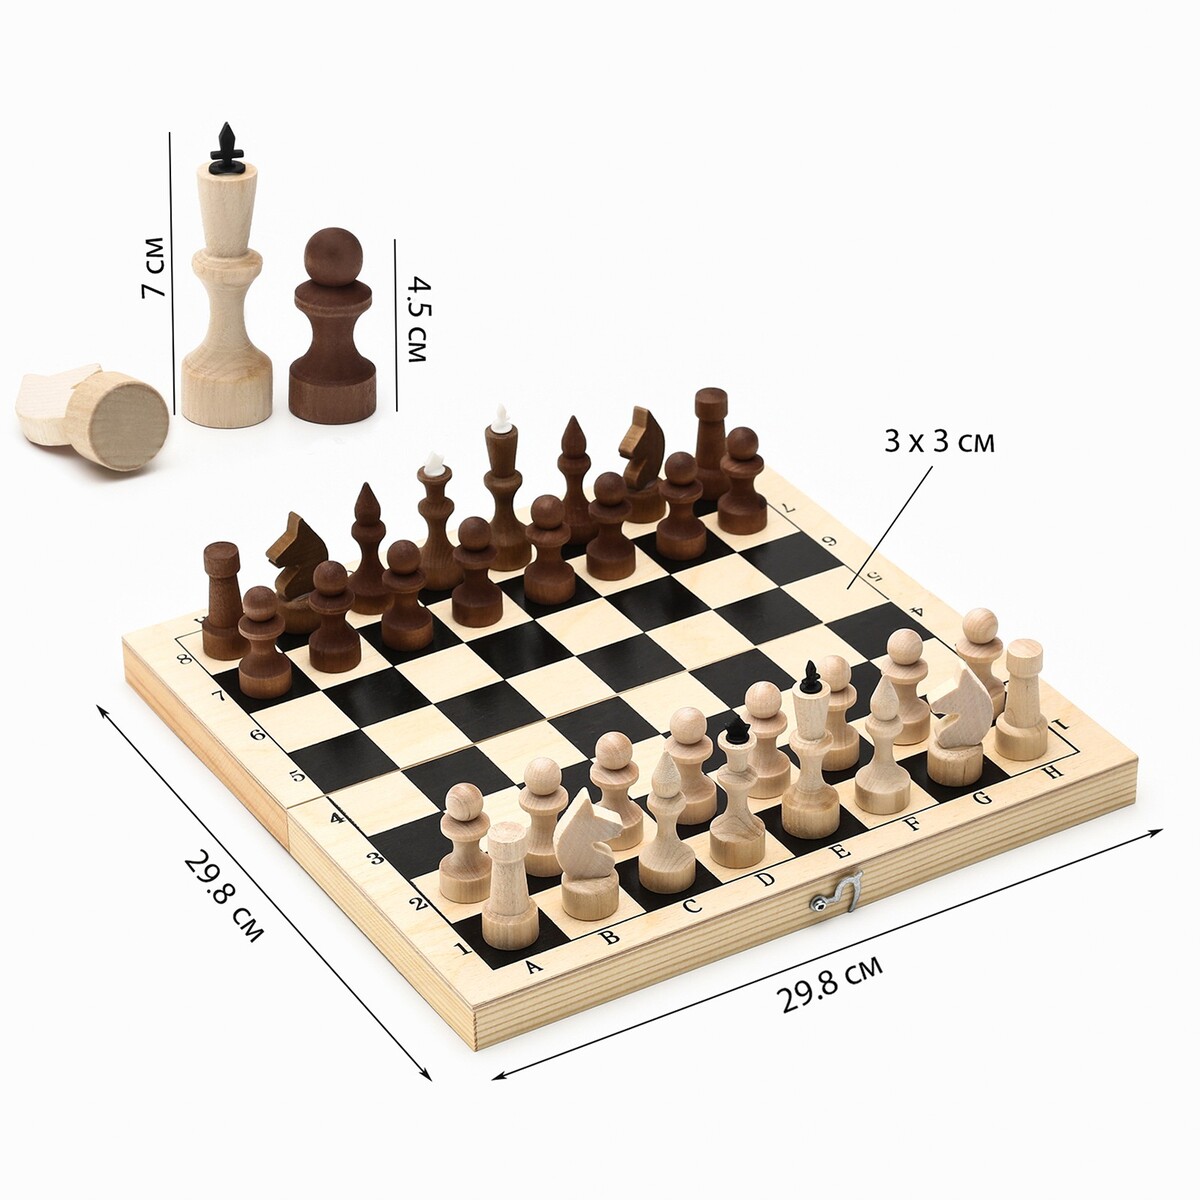 Шахматы деревянные обиходные 29.8 х 29.8 см, король h-7.2 см, пешка h-4.5 см шахматы турнирные деревянные 40 х 40 см